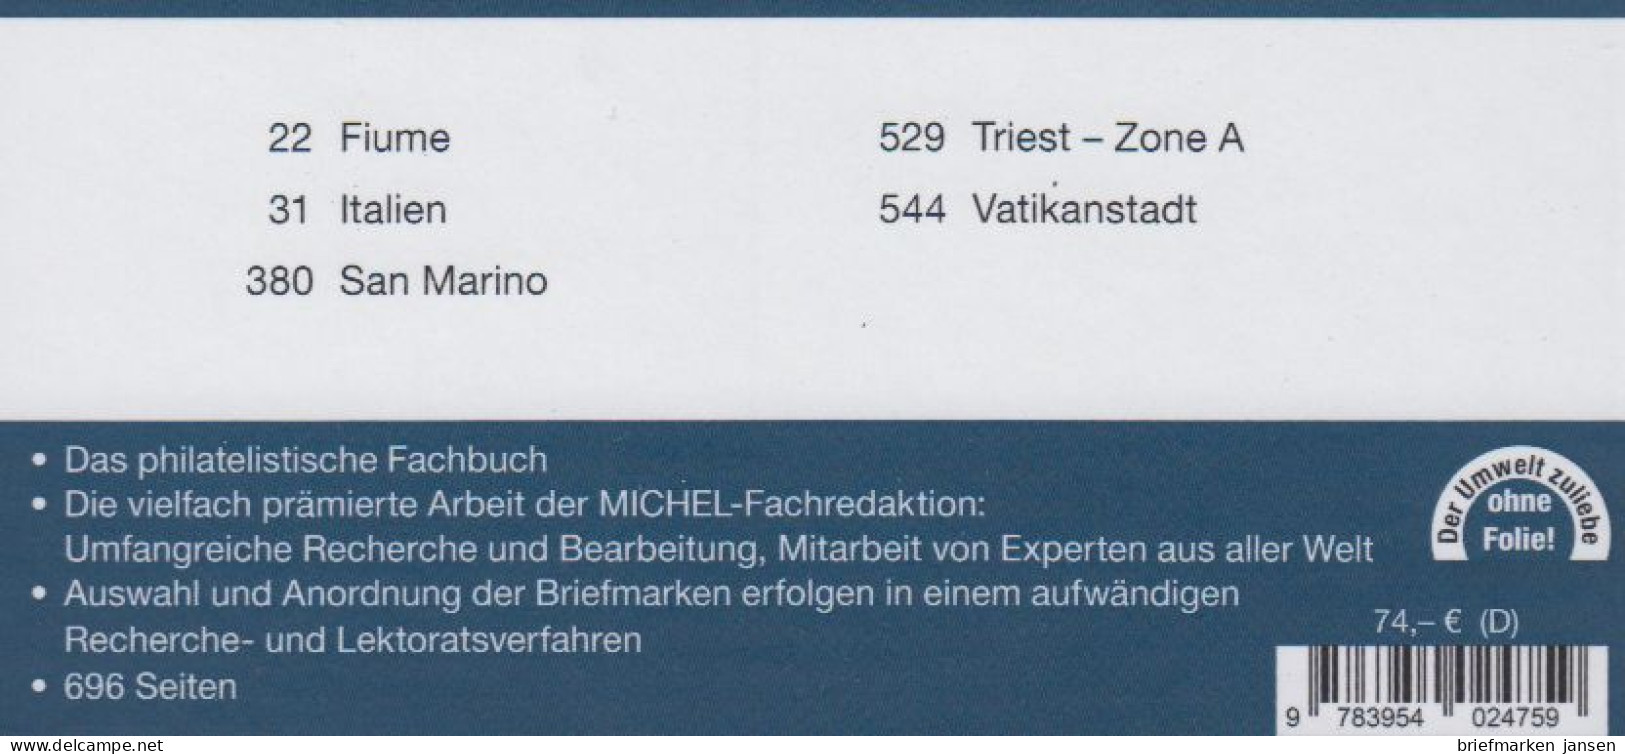 Michel Europa Katalog Band 5 - Apenninen-Halbinsel 2024, 109. Auflage - Österreich